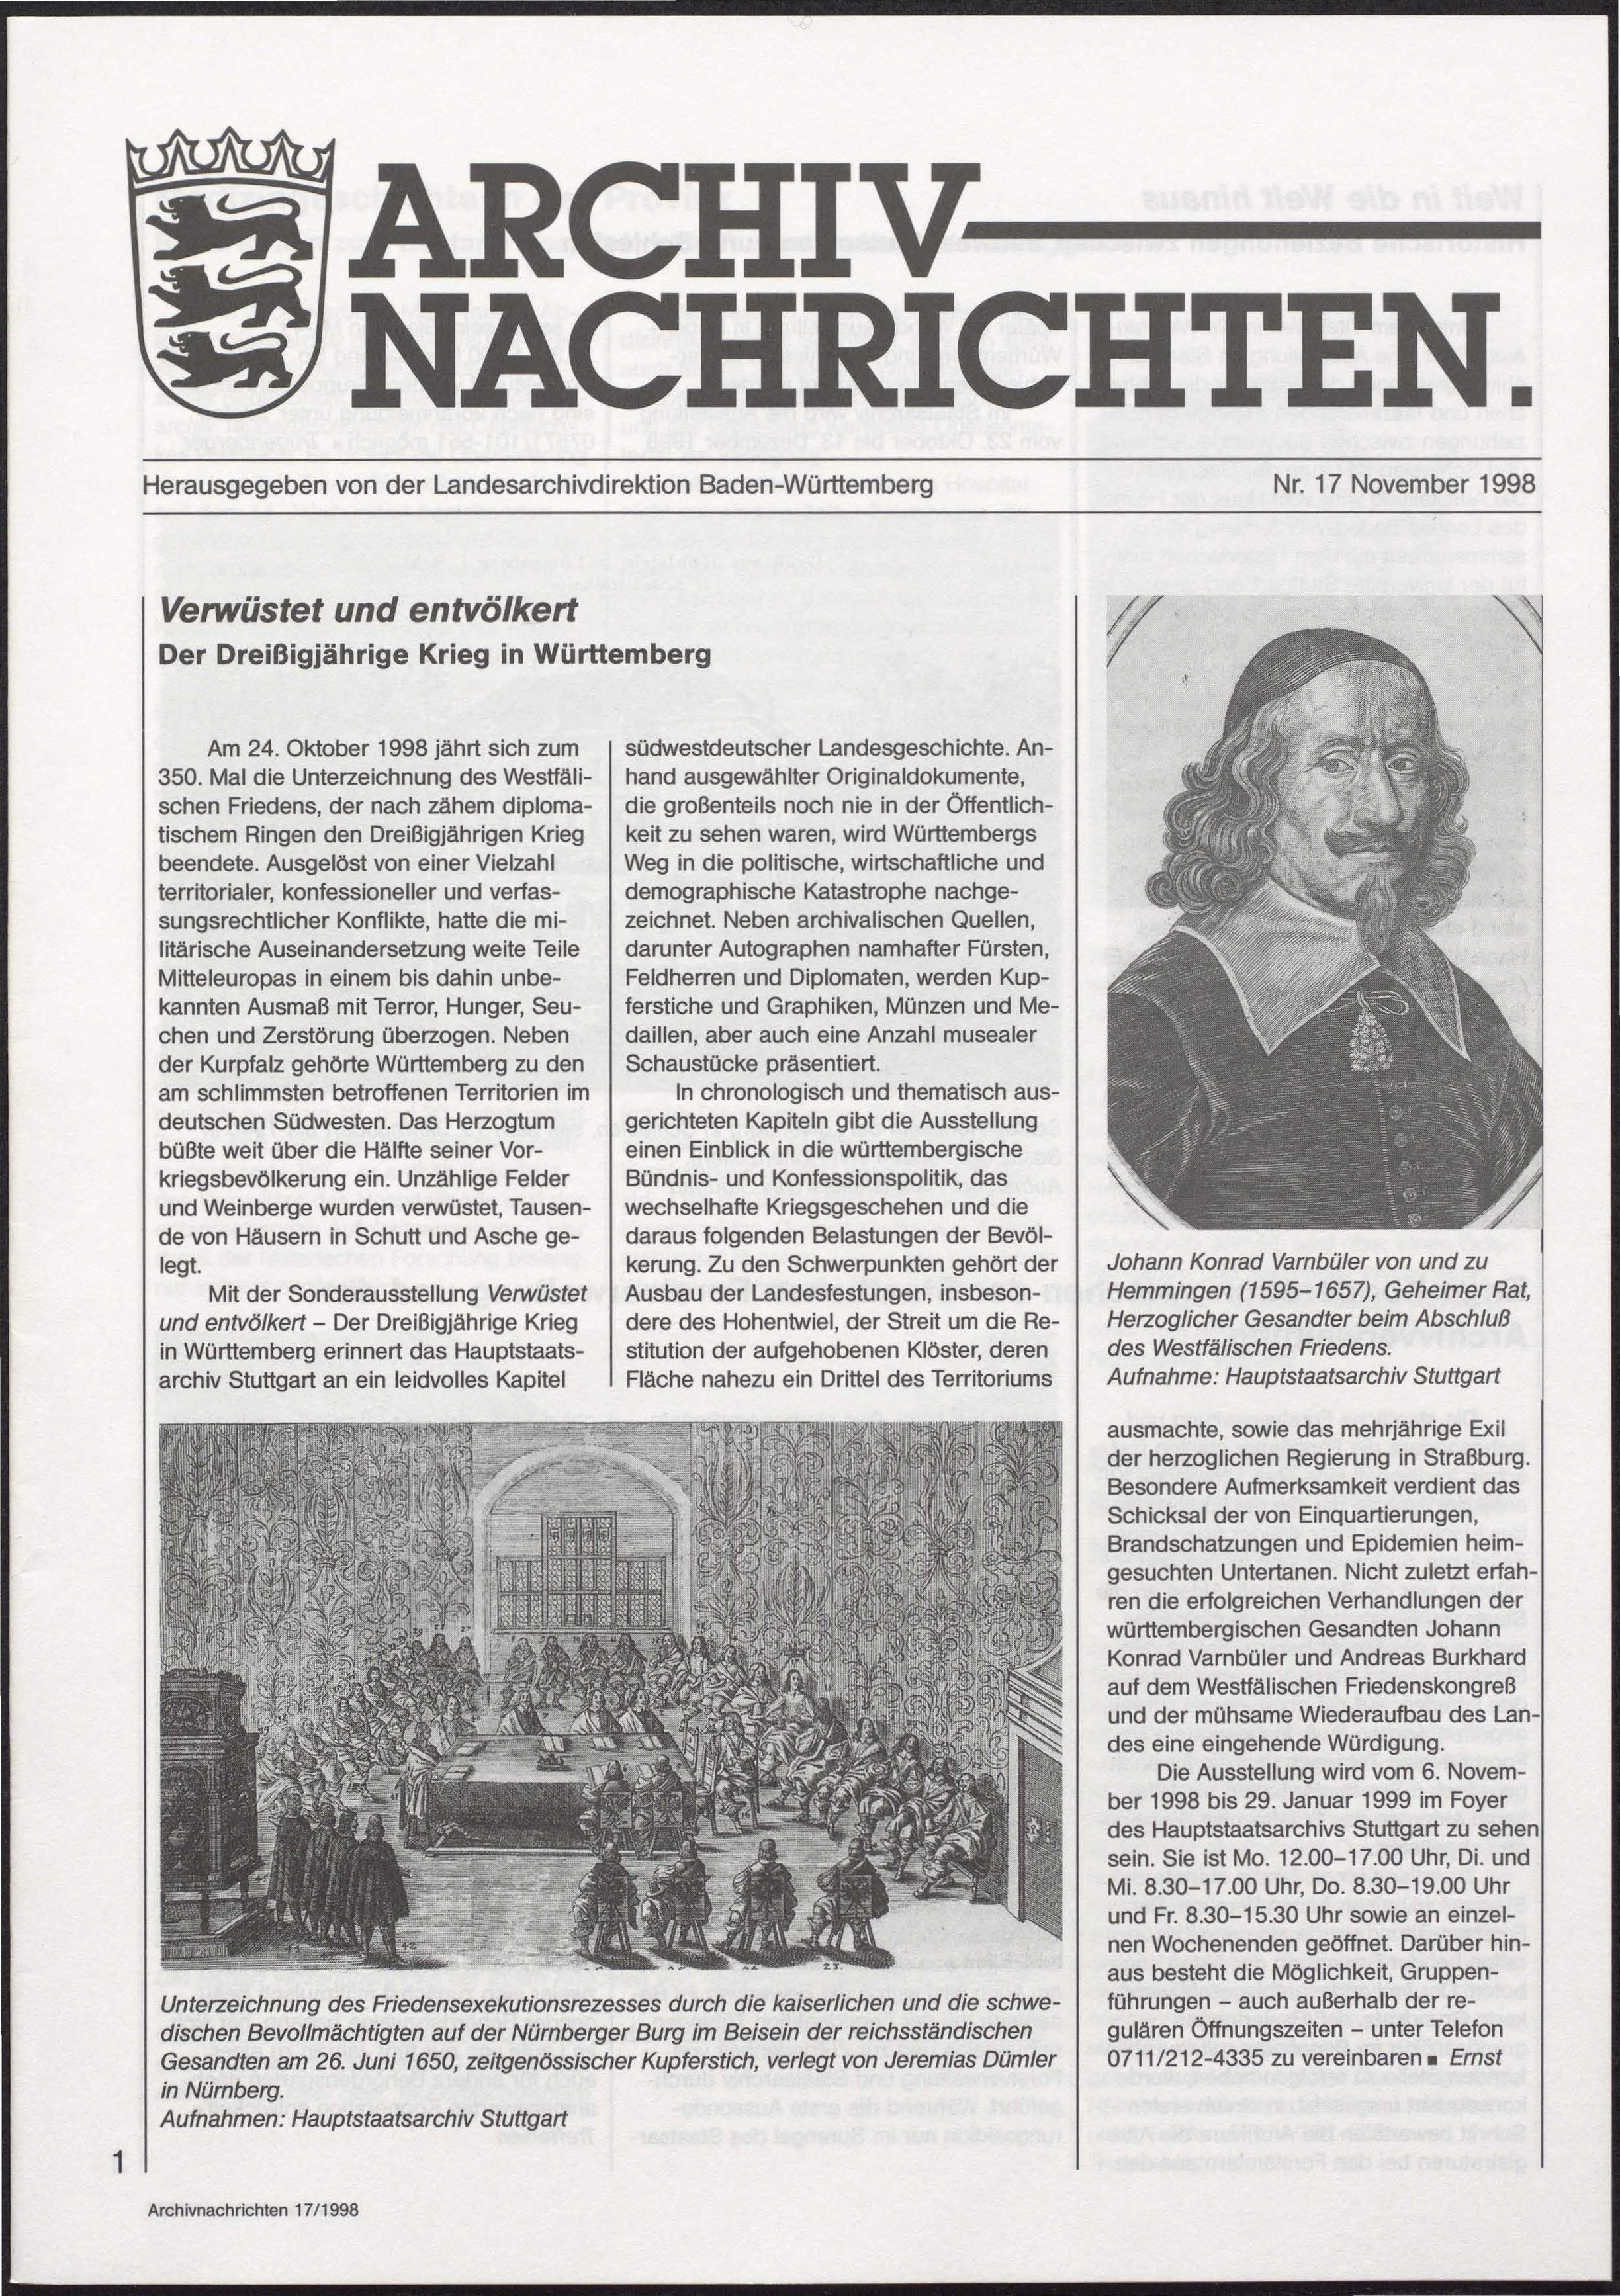                     Ansehen Nr. 17 (1998): Archivnachrichten
                